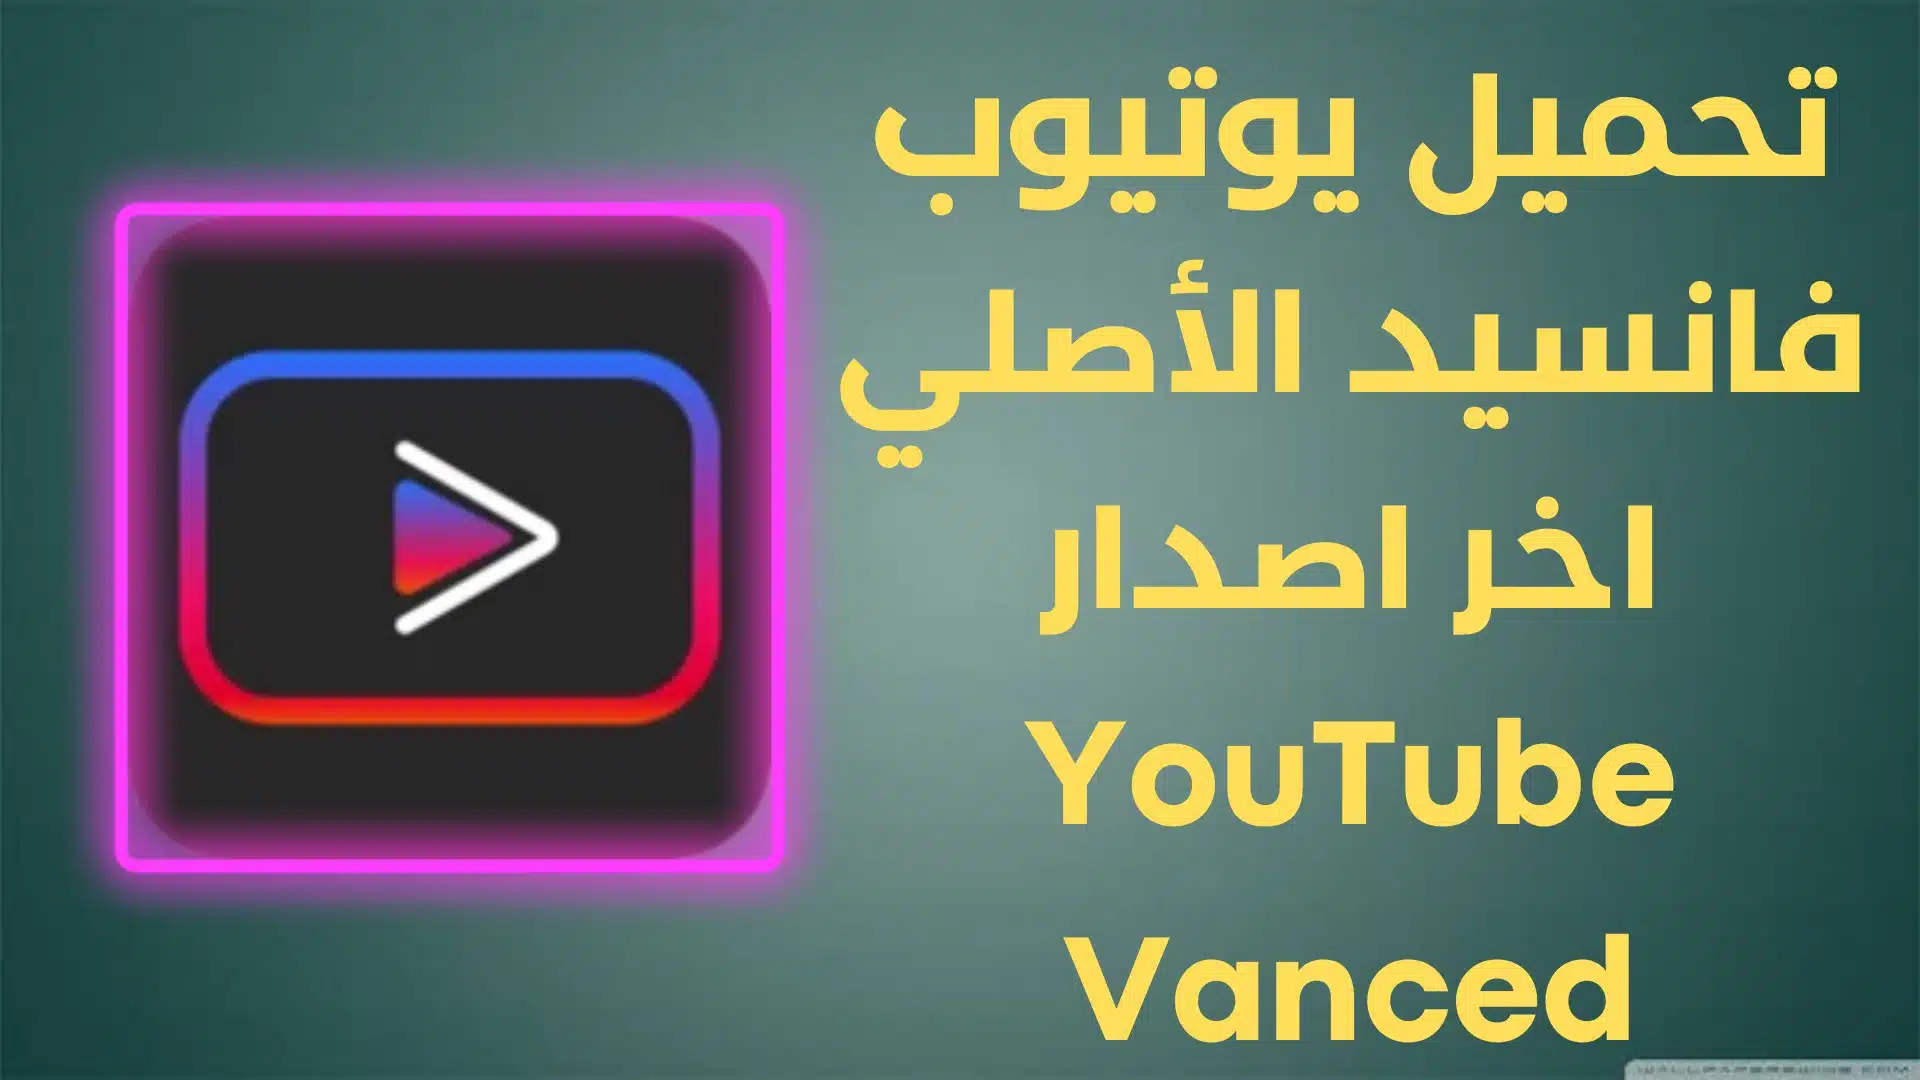 تحميل يوتيوب فانسيد الأصلي اخر اصدار YouTube Vanced